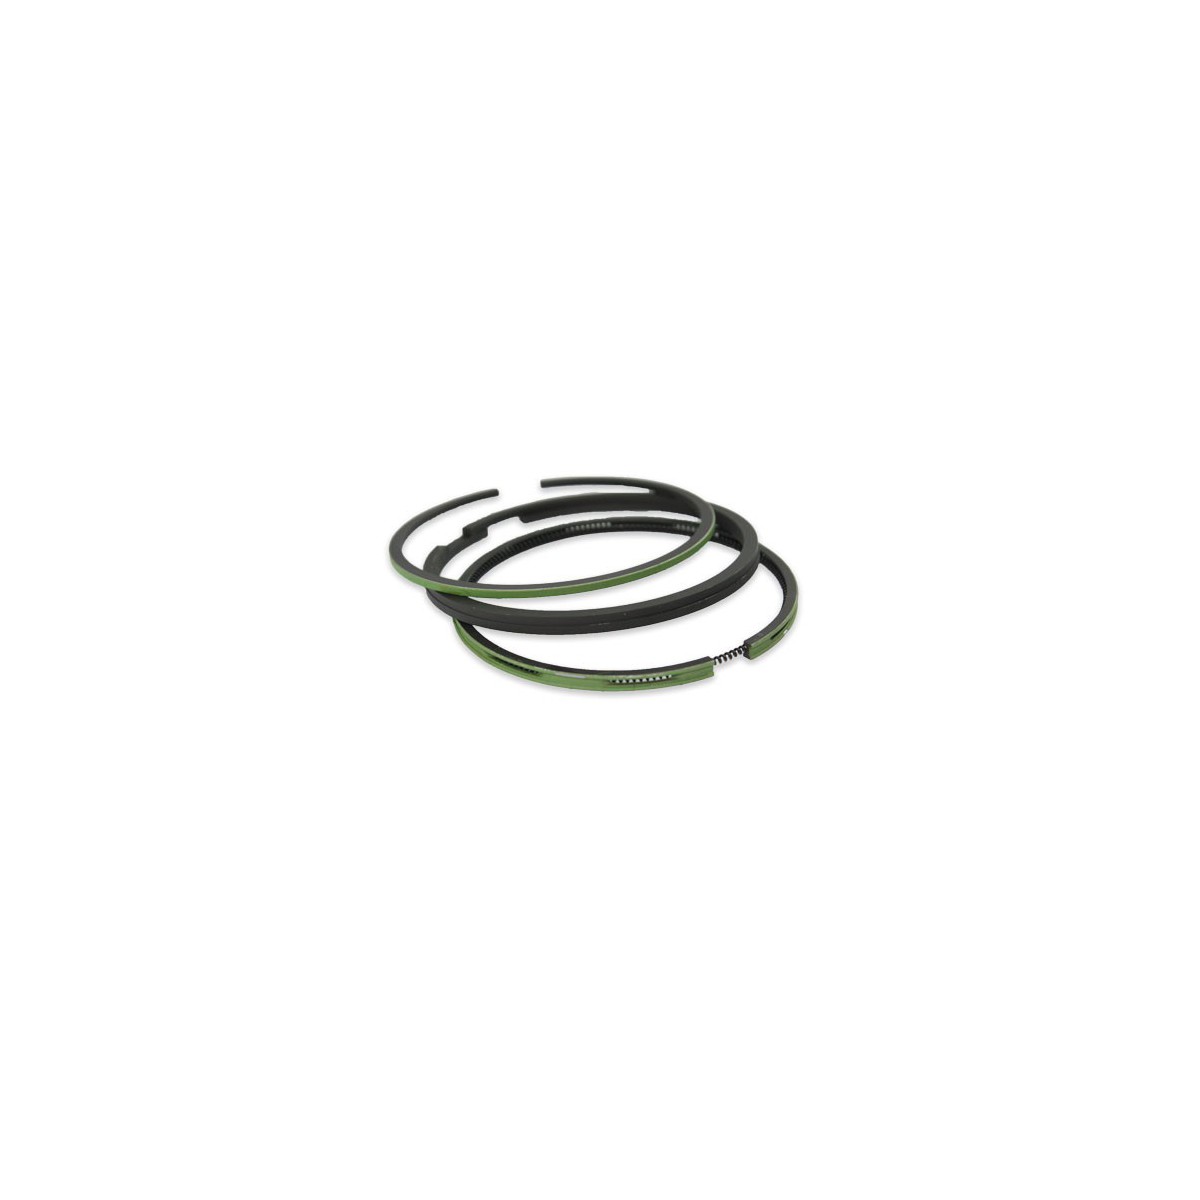 Piston rings set Yanmar YM2200, 724550-22501, 90 mm, 2.5 x 2.5 x 2.5 x 4.5 STD